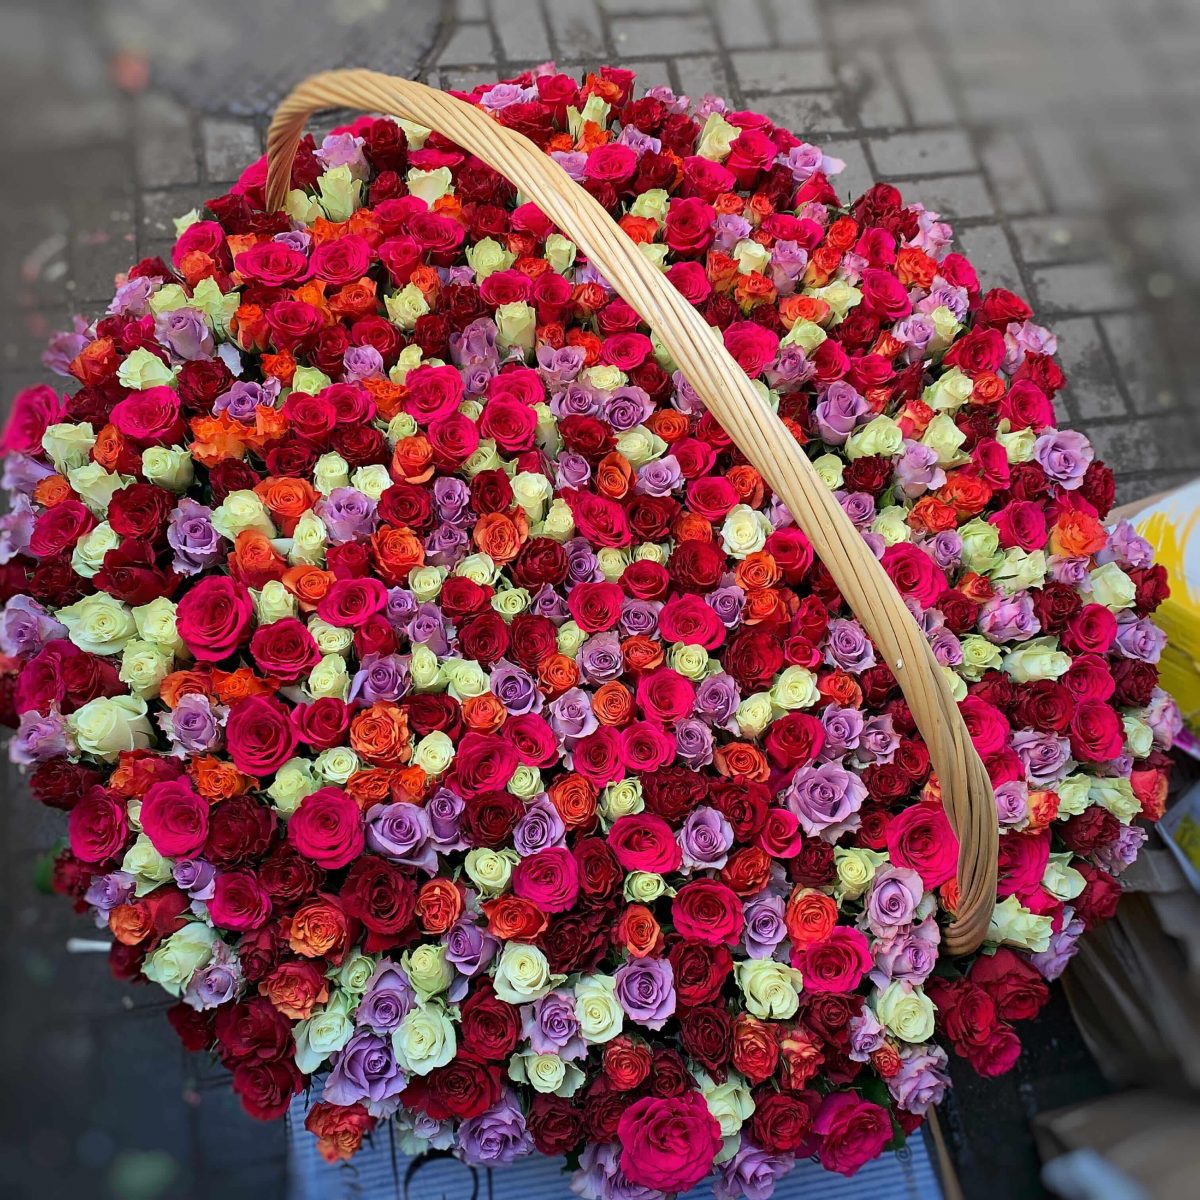 Купить большой букет из роз 501 шт Микс по доступной цене с доставкой вМоскве и области в интернет-магазине Город Букетов